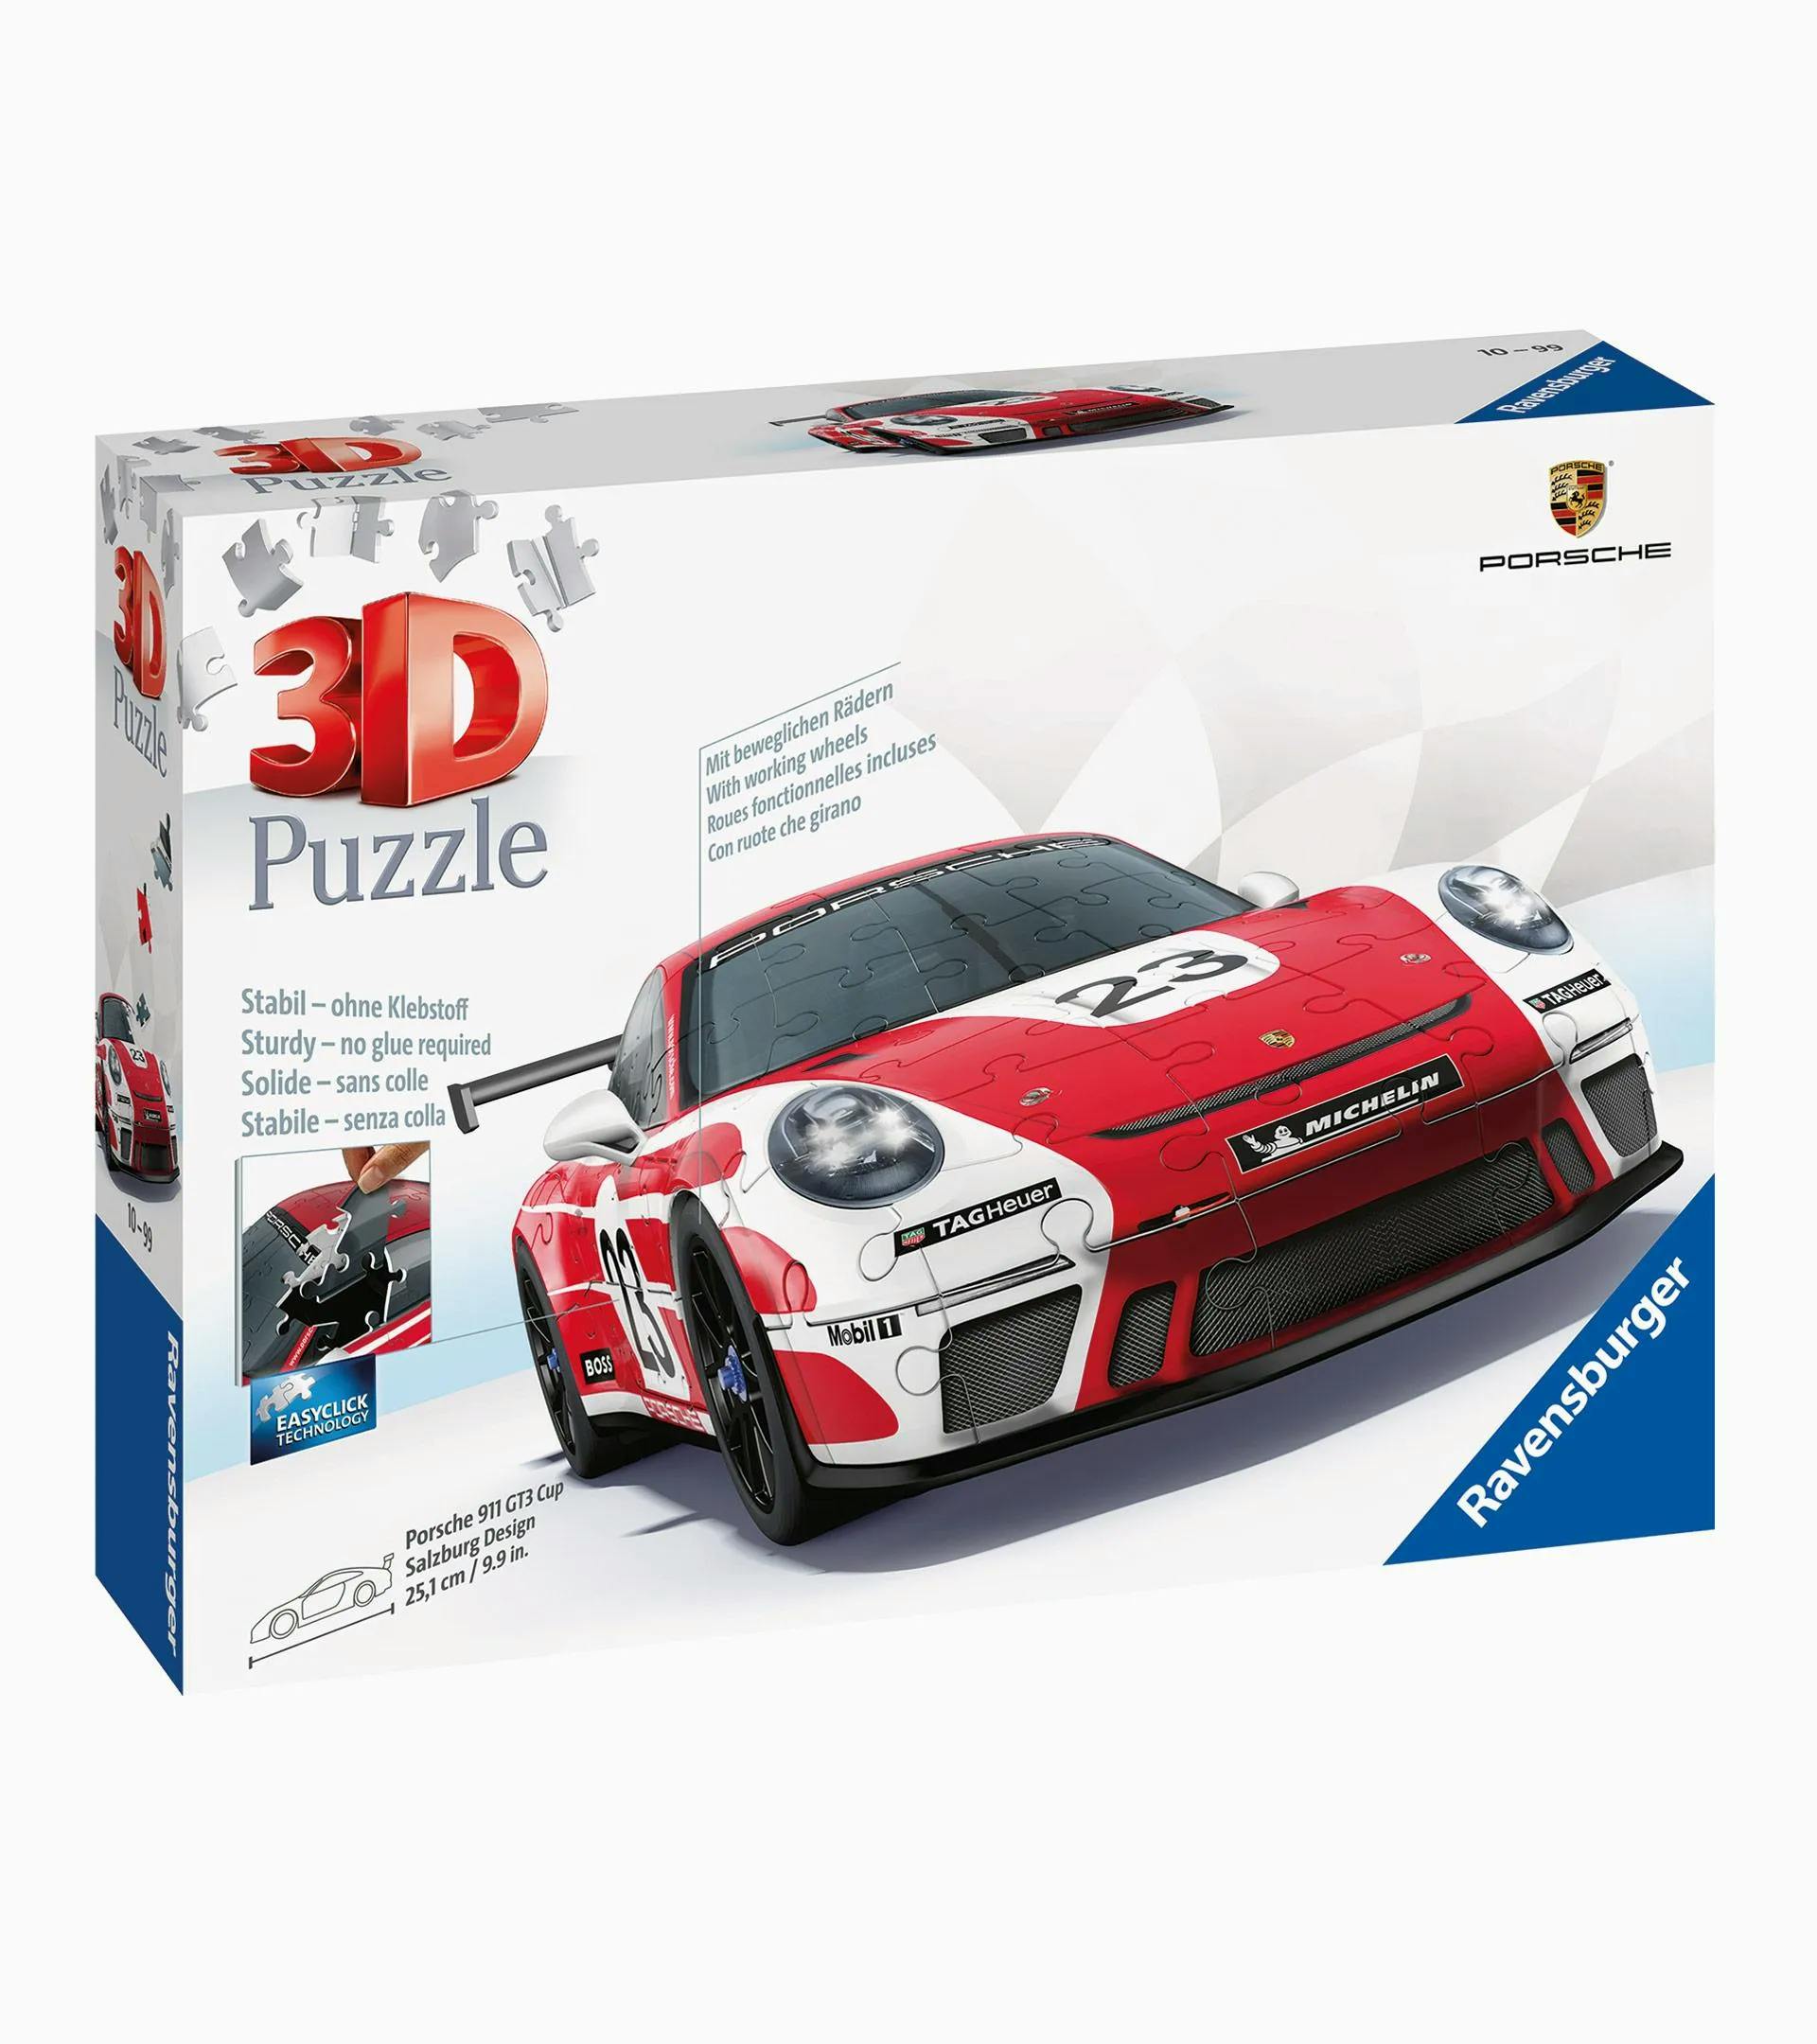 Puzzle en 3D de Ravensburger – 911 GT3 Cup– 917 Salzburg 1